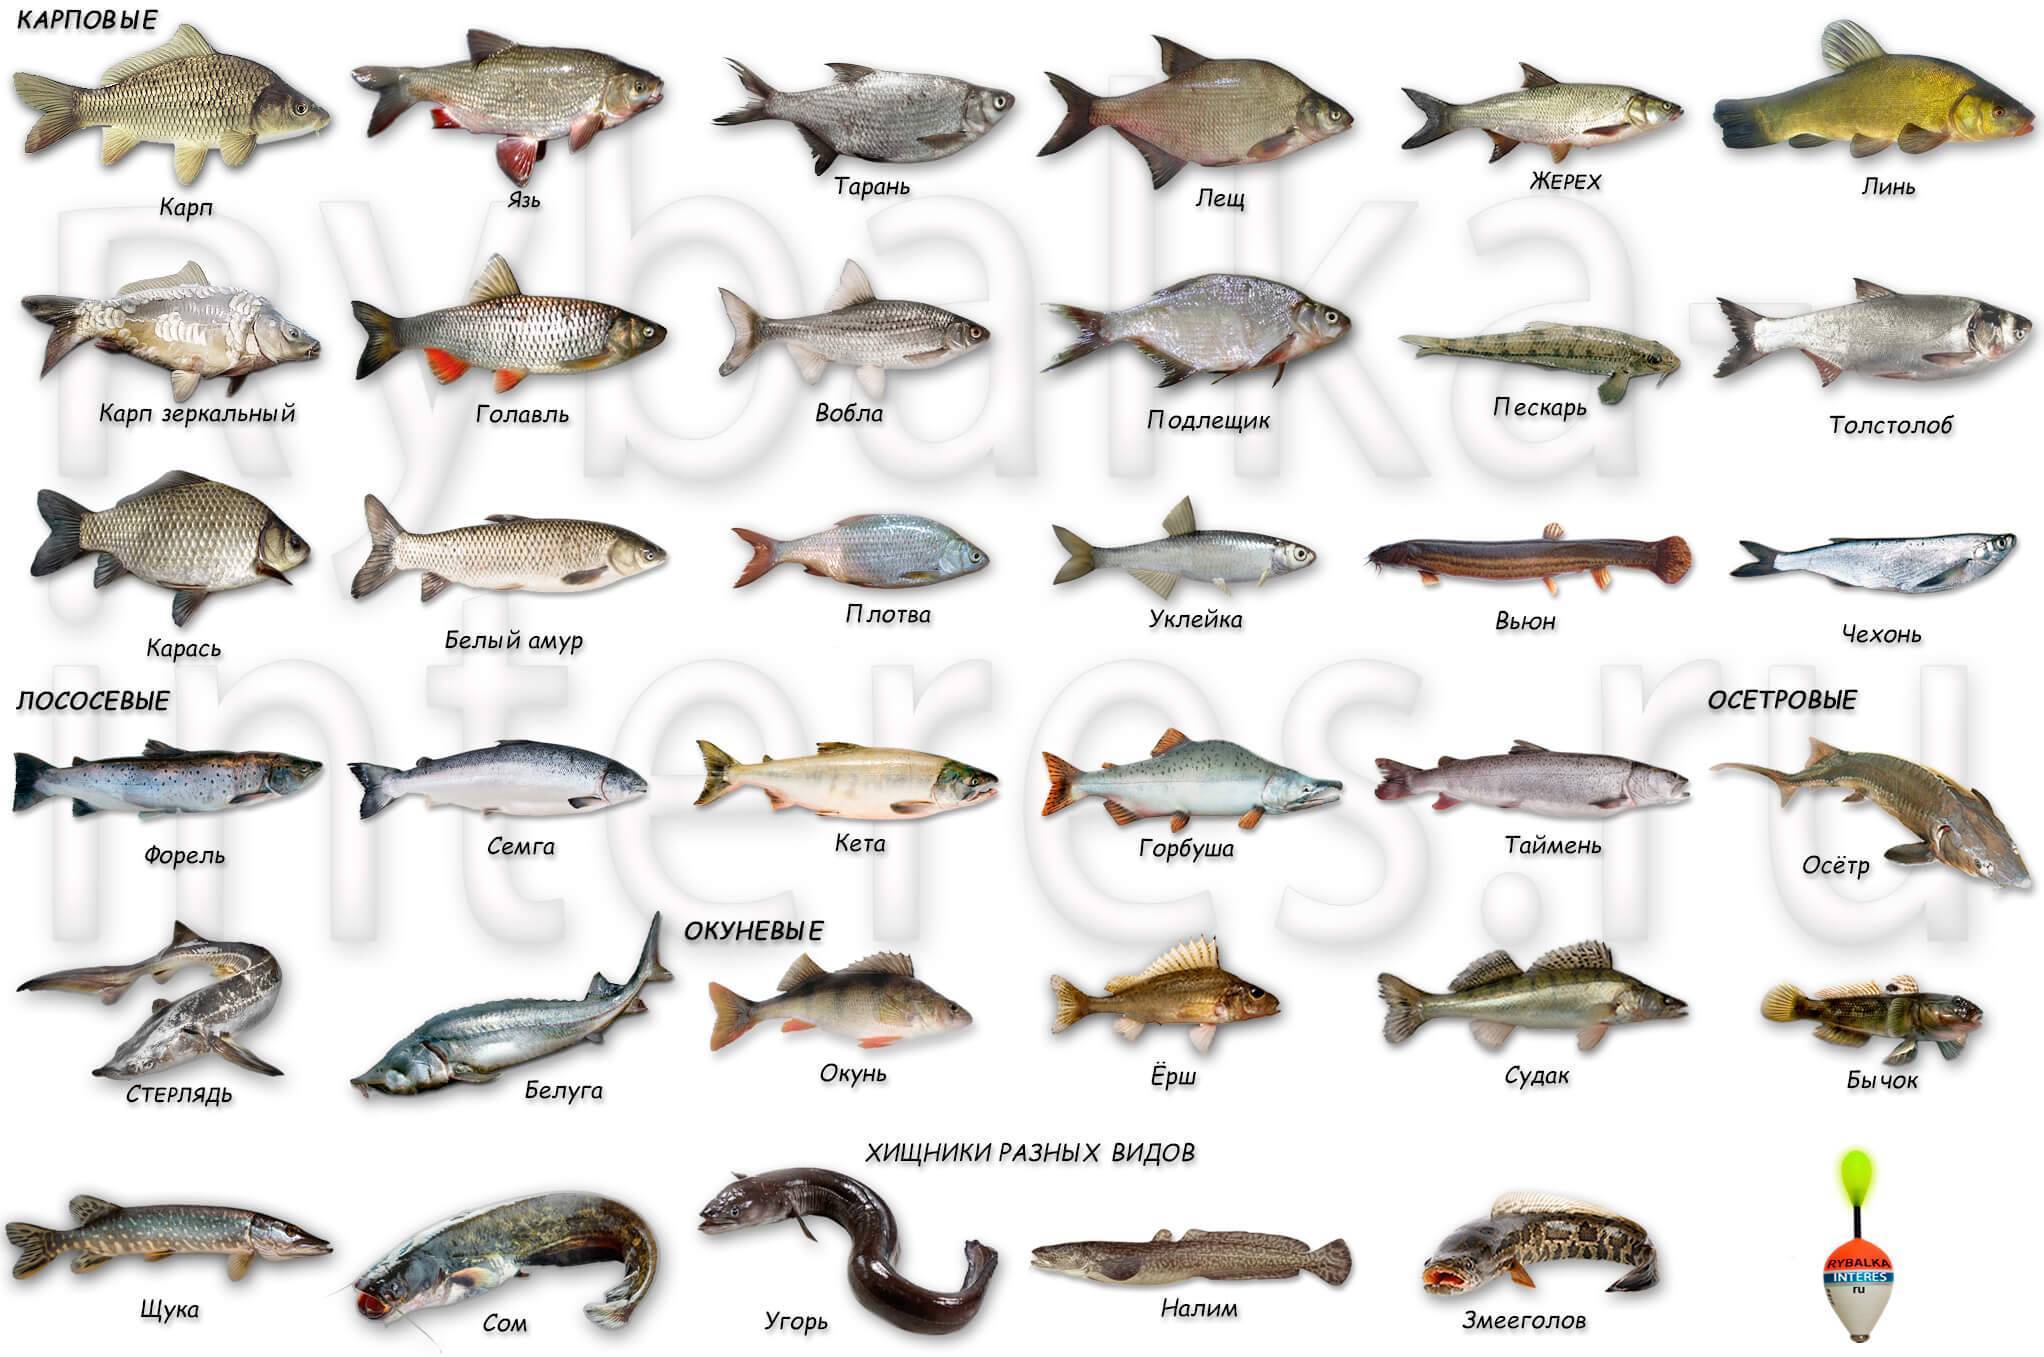 Самые большие речные рыбы в россии – список, размеры, фото и видео - «как и почему»